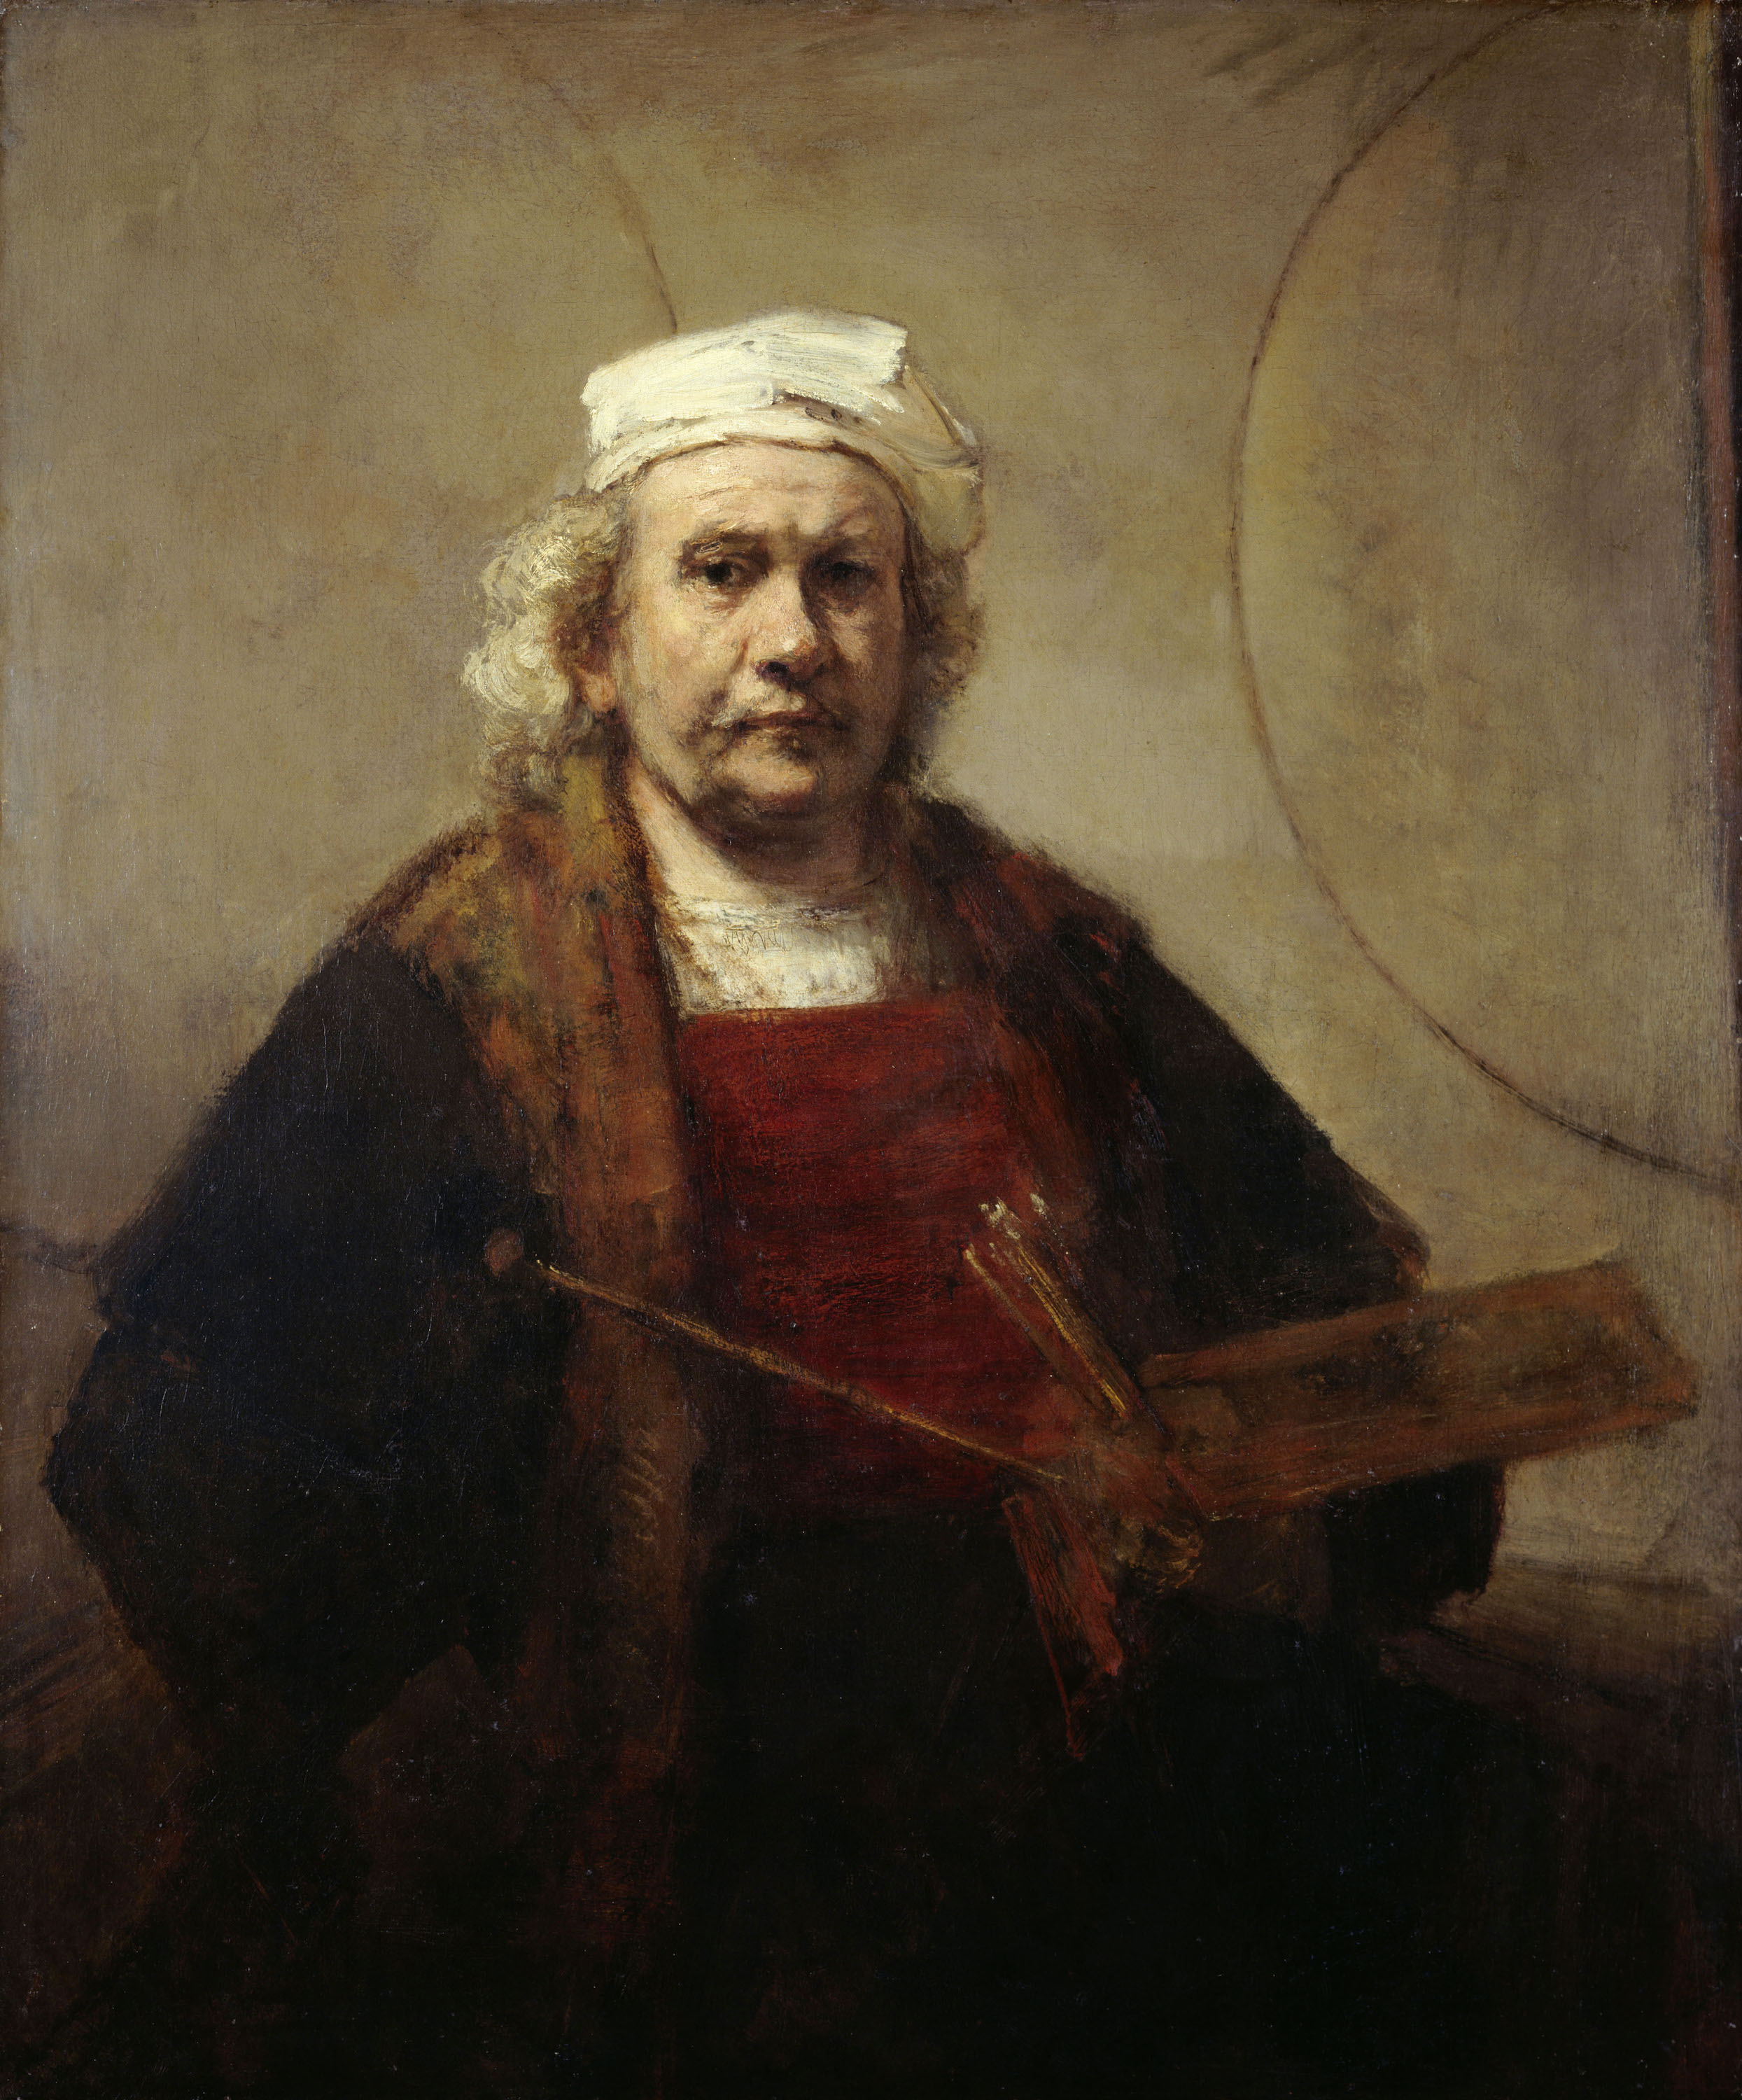 Selbstporträt mit zwei Kreisen by Rembrandt van Rijn - ca. 1665–1669 - 114.3 cm × 94 cm Kenwood House